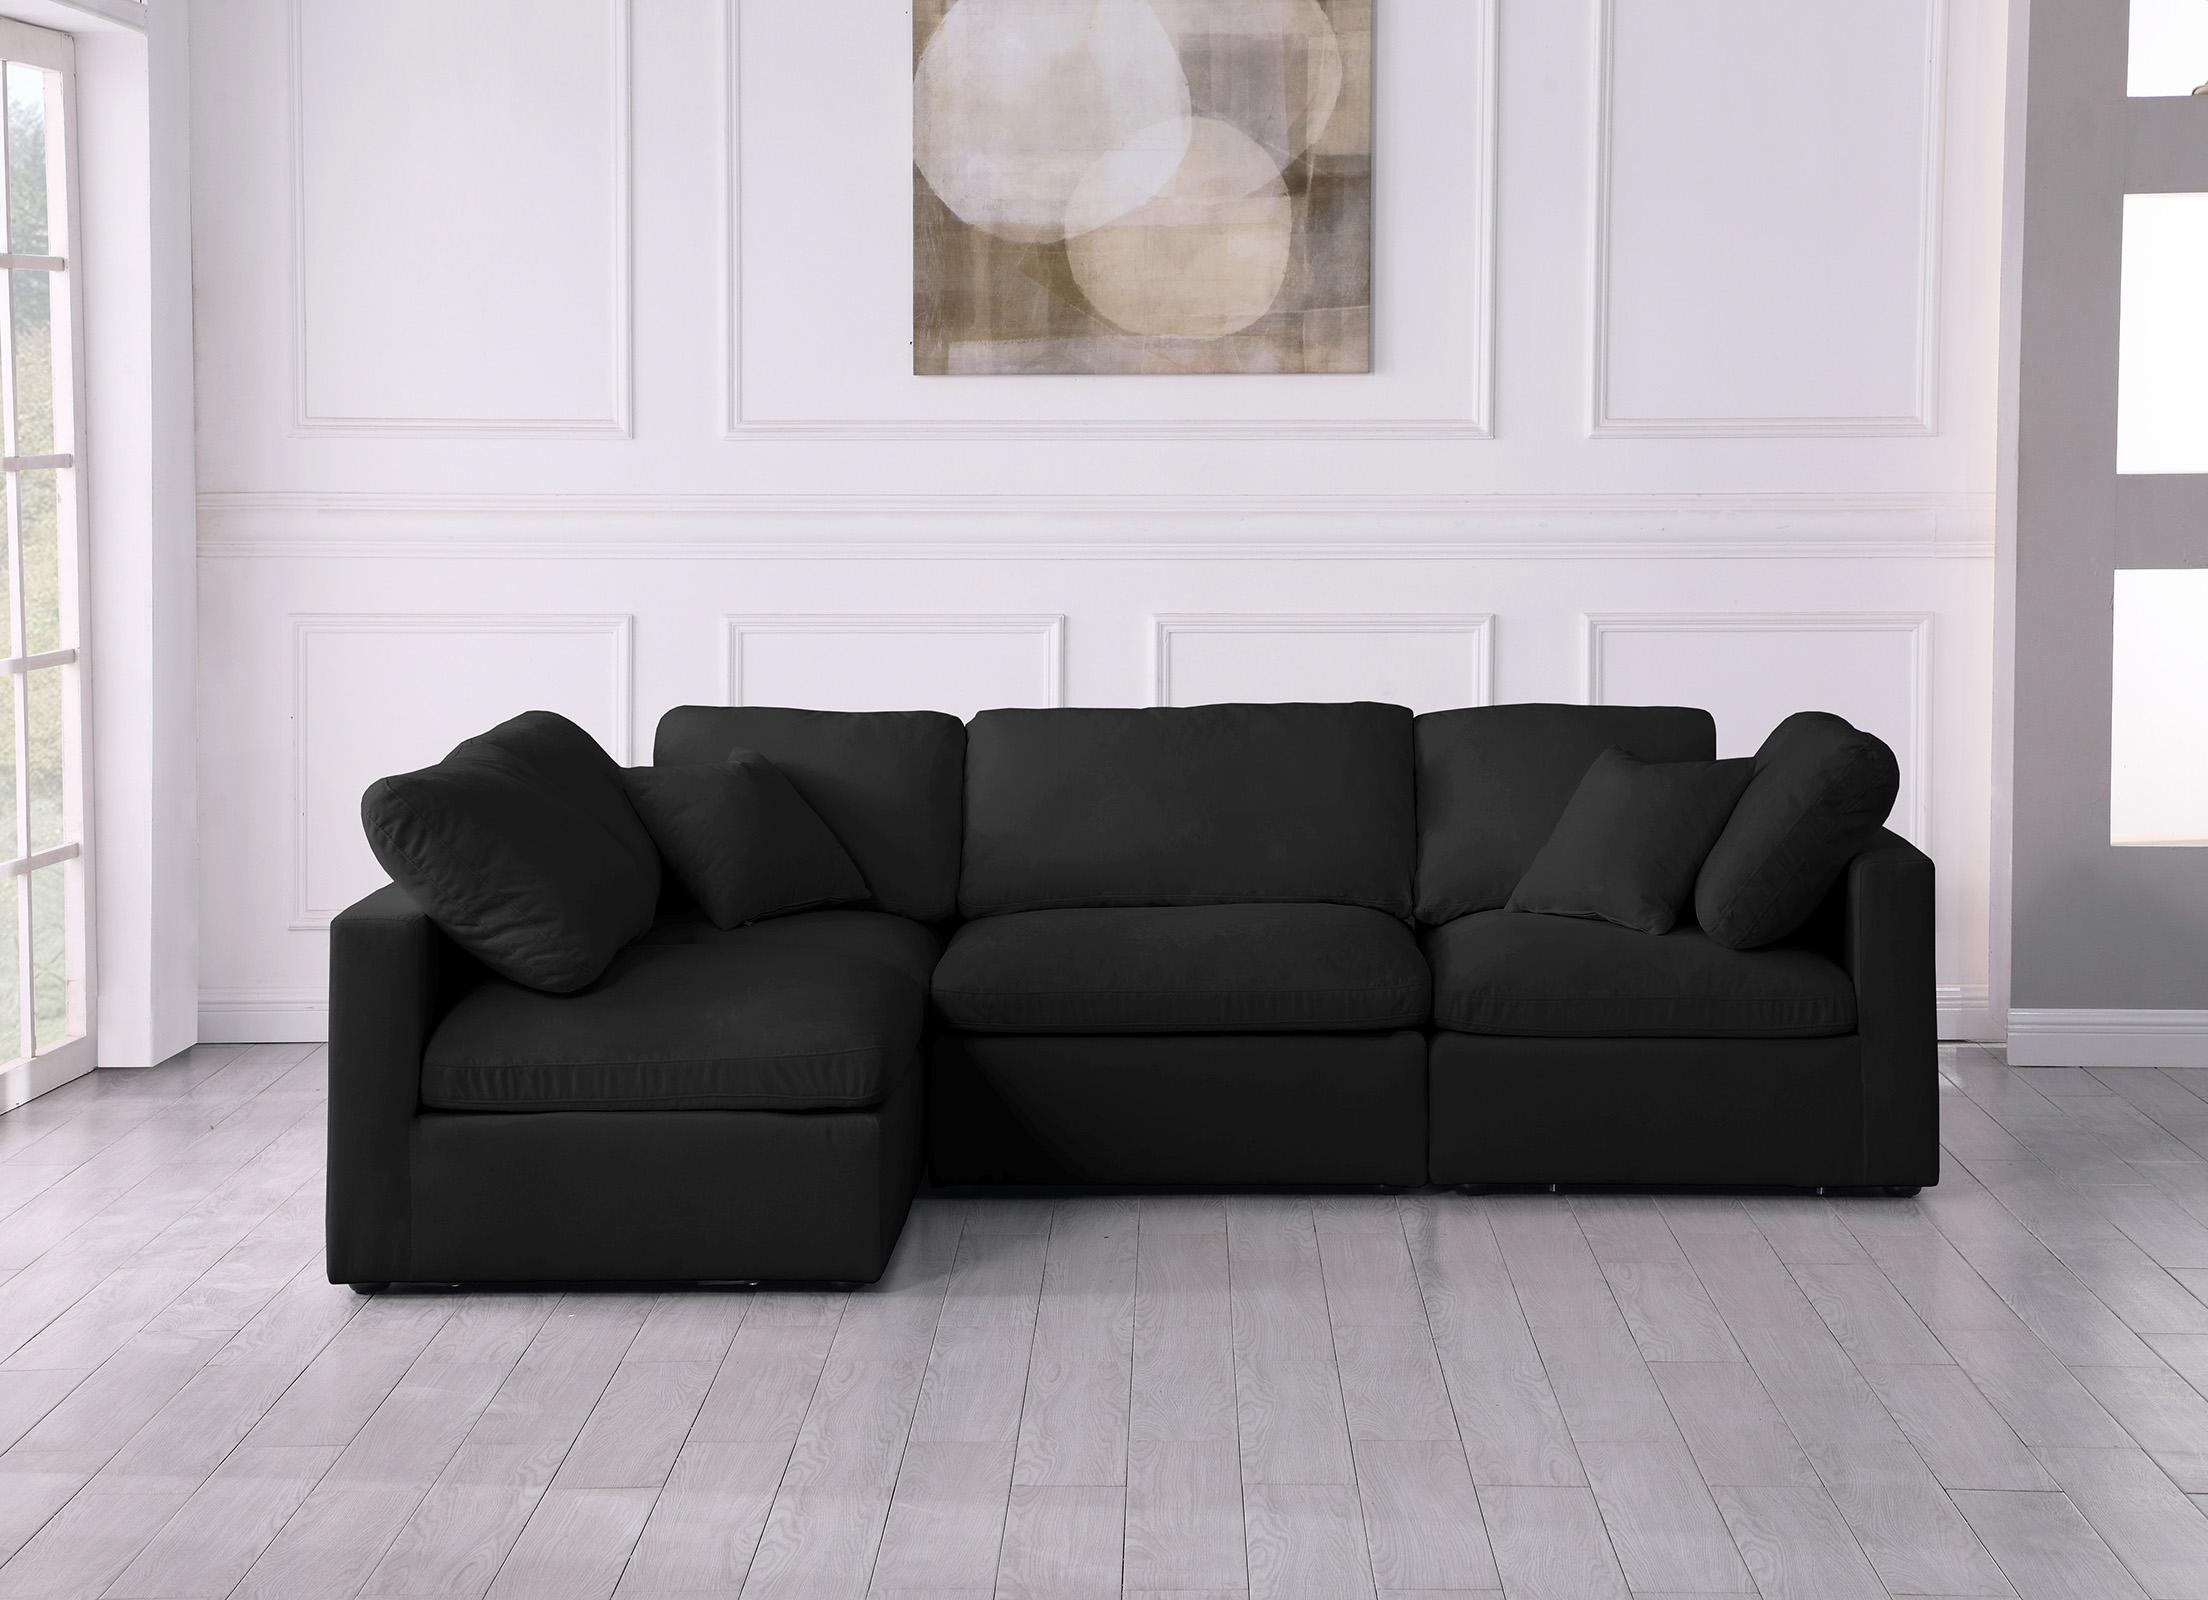 

    
602Black-Sec4B Meridian Furniture Sectional Sofa
